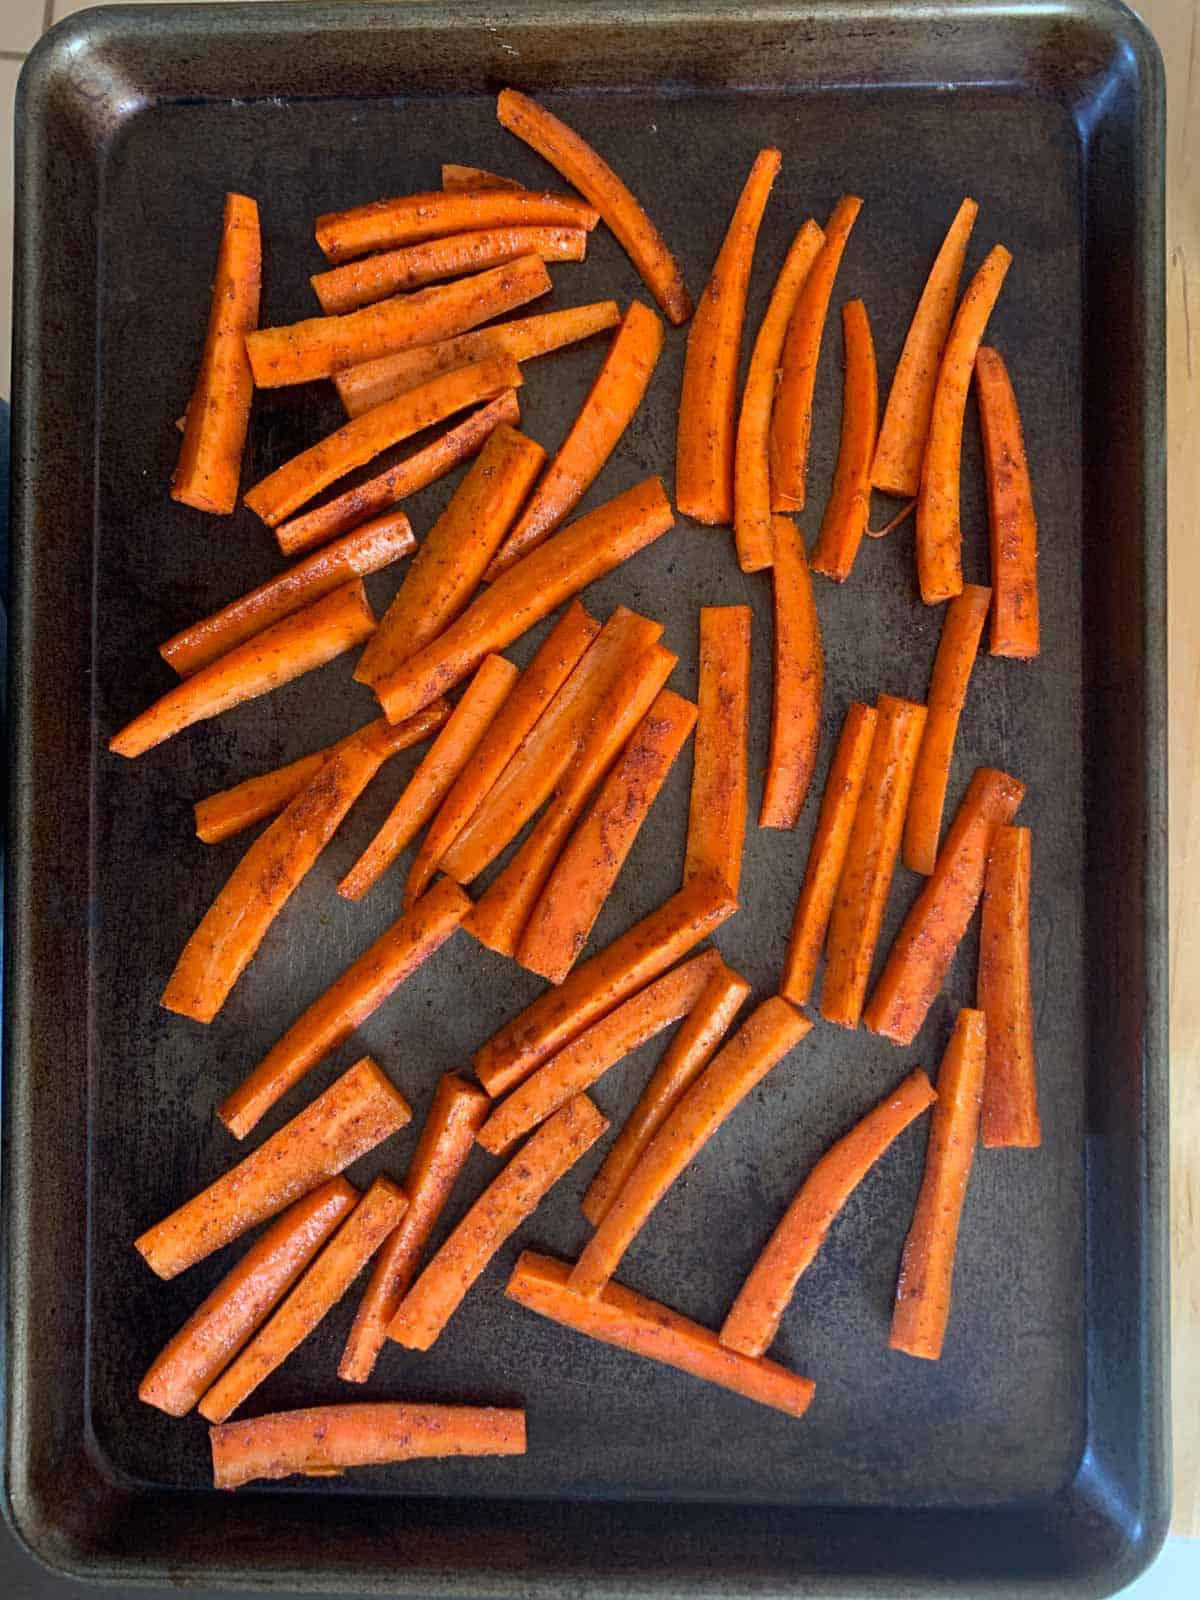 carrot fries on sheet pan